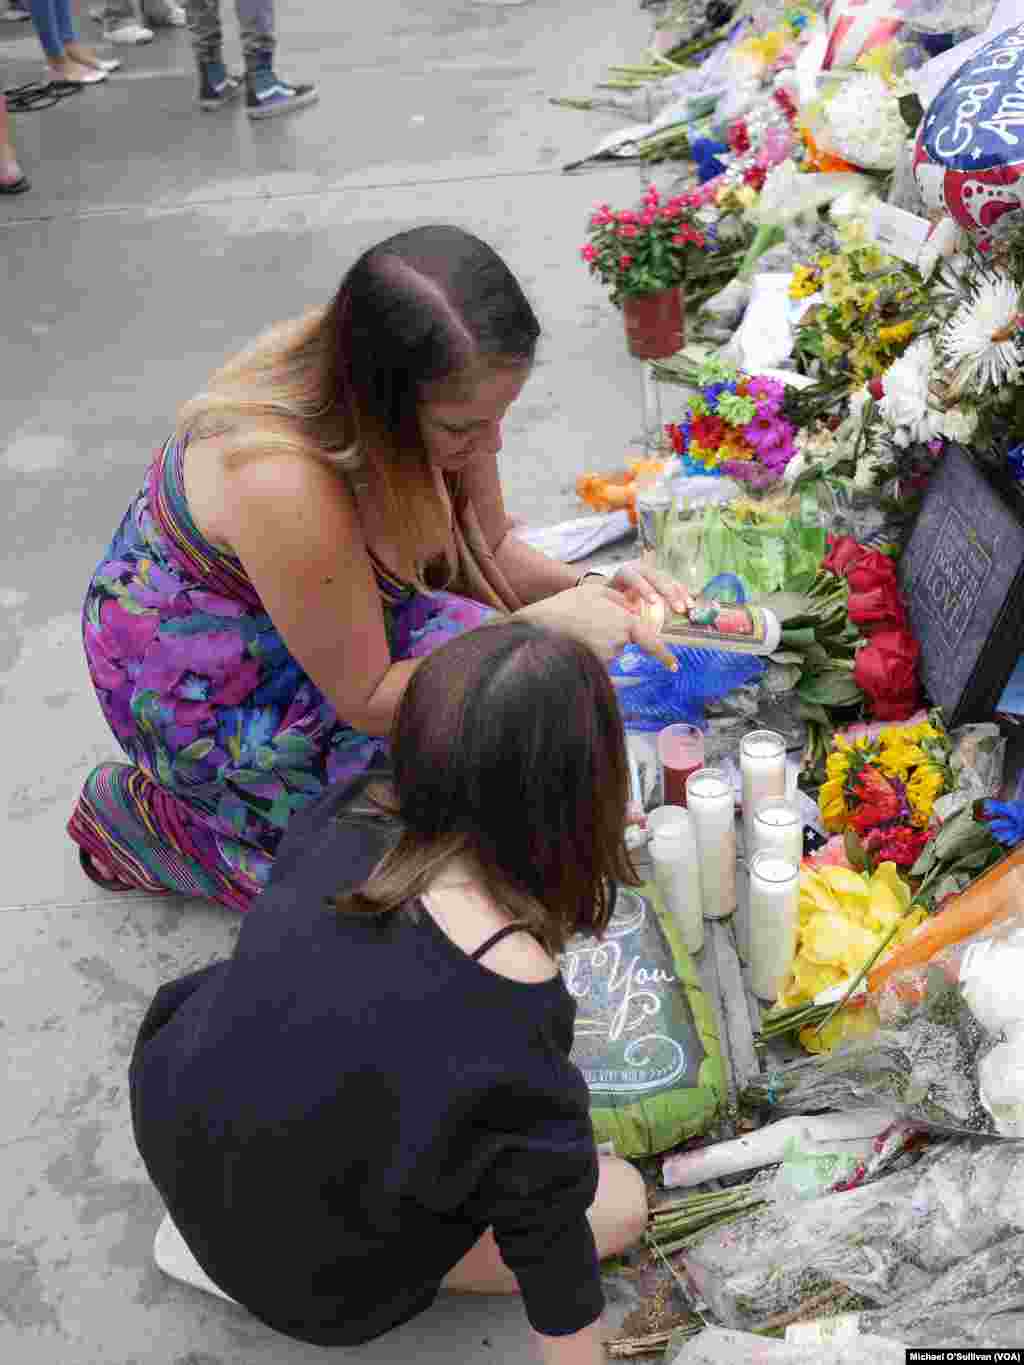 شهروندان بسیاری با اهدای گل و روشن کردن شمع٬ یاد پنج پلیس کشته شده را گرامی داشتند.